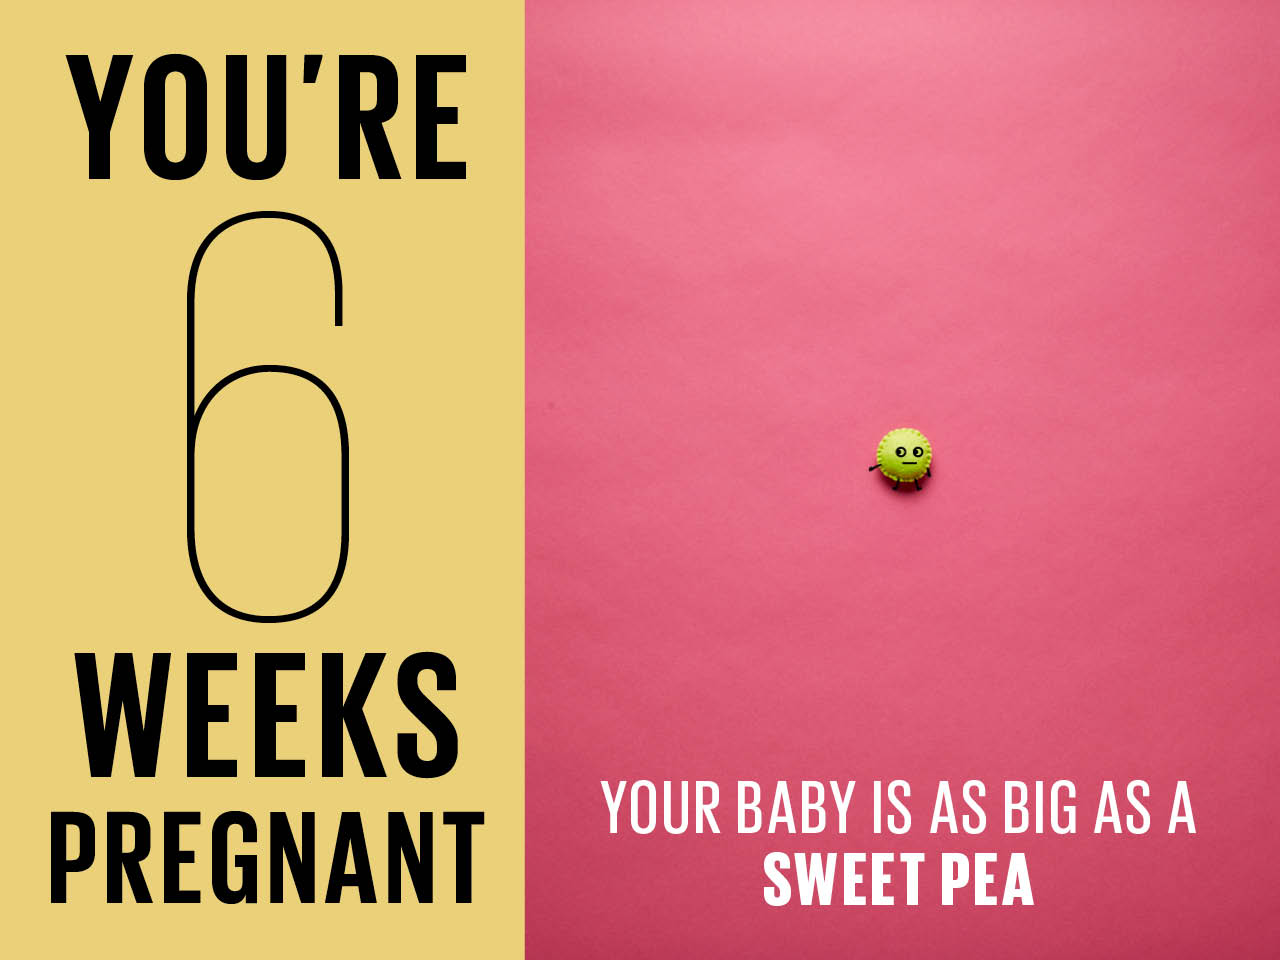 Kích thước thai 6 tuần chỉ bé bằng 1 hạt đậu